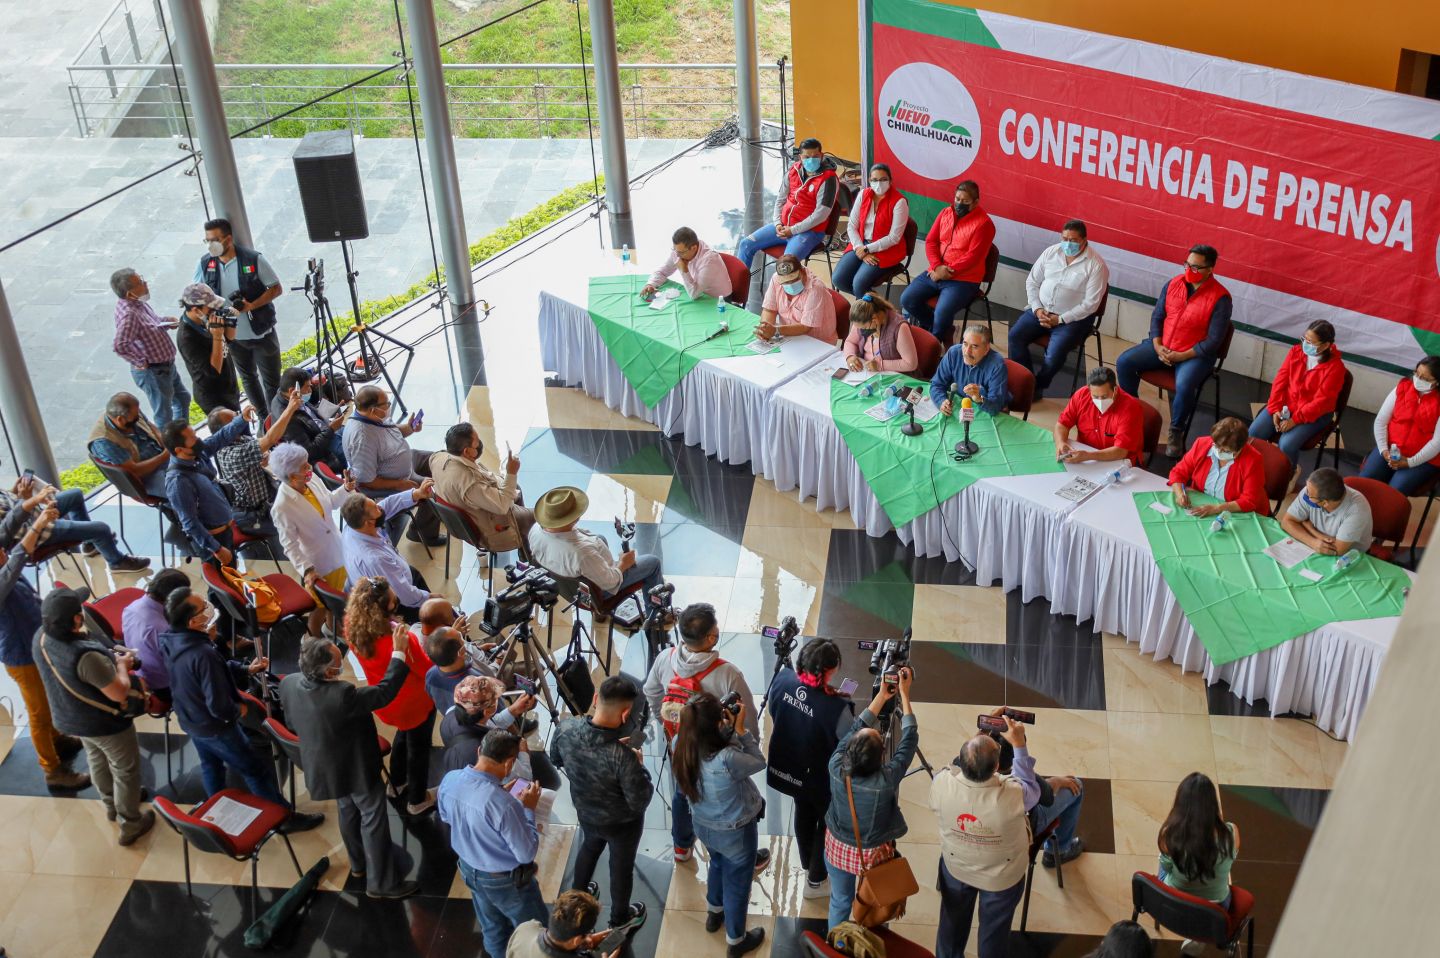 #El Proyecto Nuevo Chimalhuacán impugnará la elección 2021